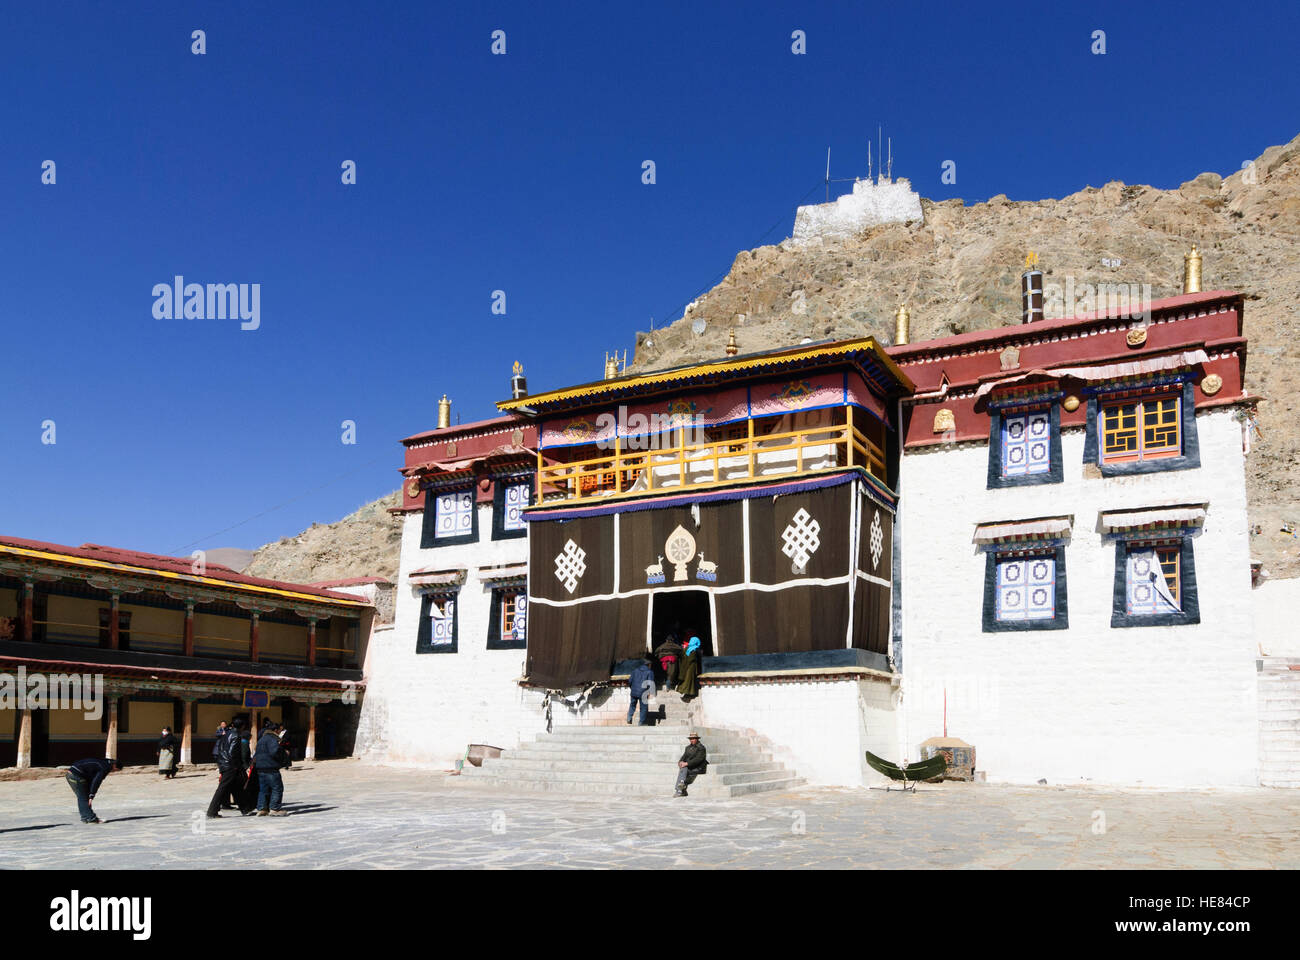 Dagtse : Sanga monastère sous le Dagtse Dzong (château), Tibet, Chine Banque D'Images